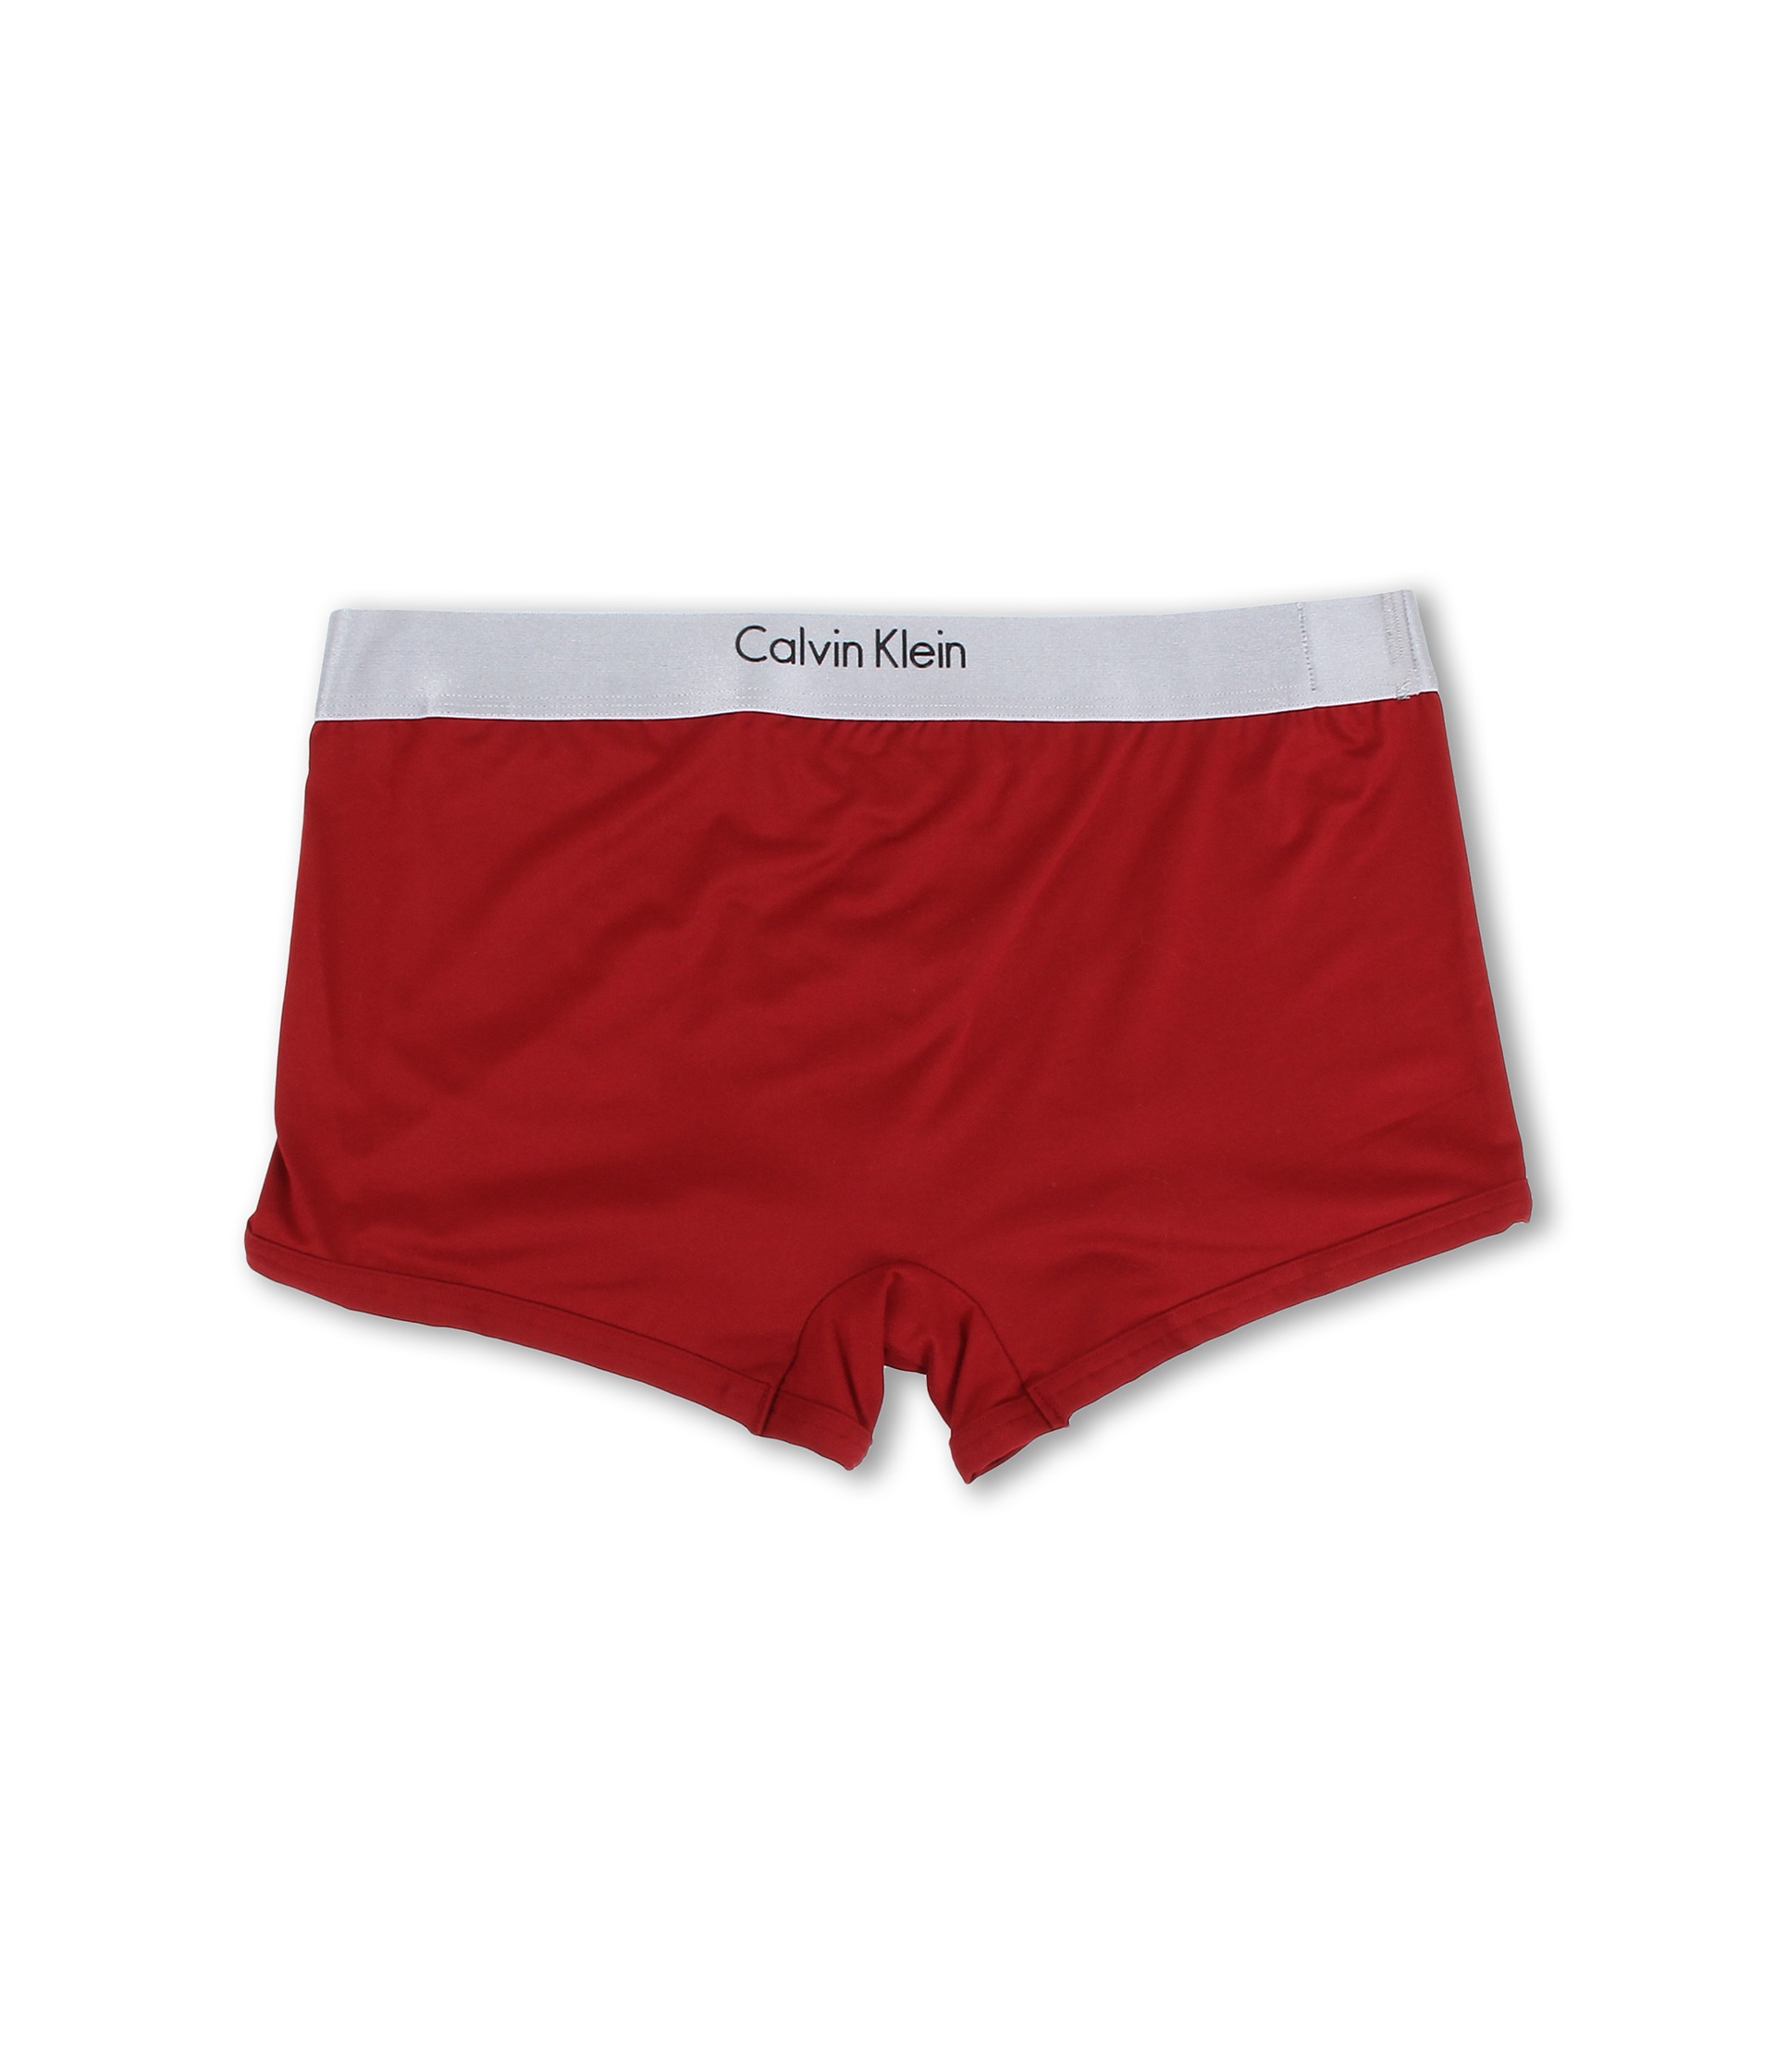 Calvin Klein Underwear Low Rise Trunk U8964